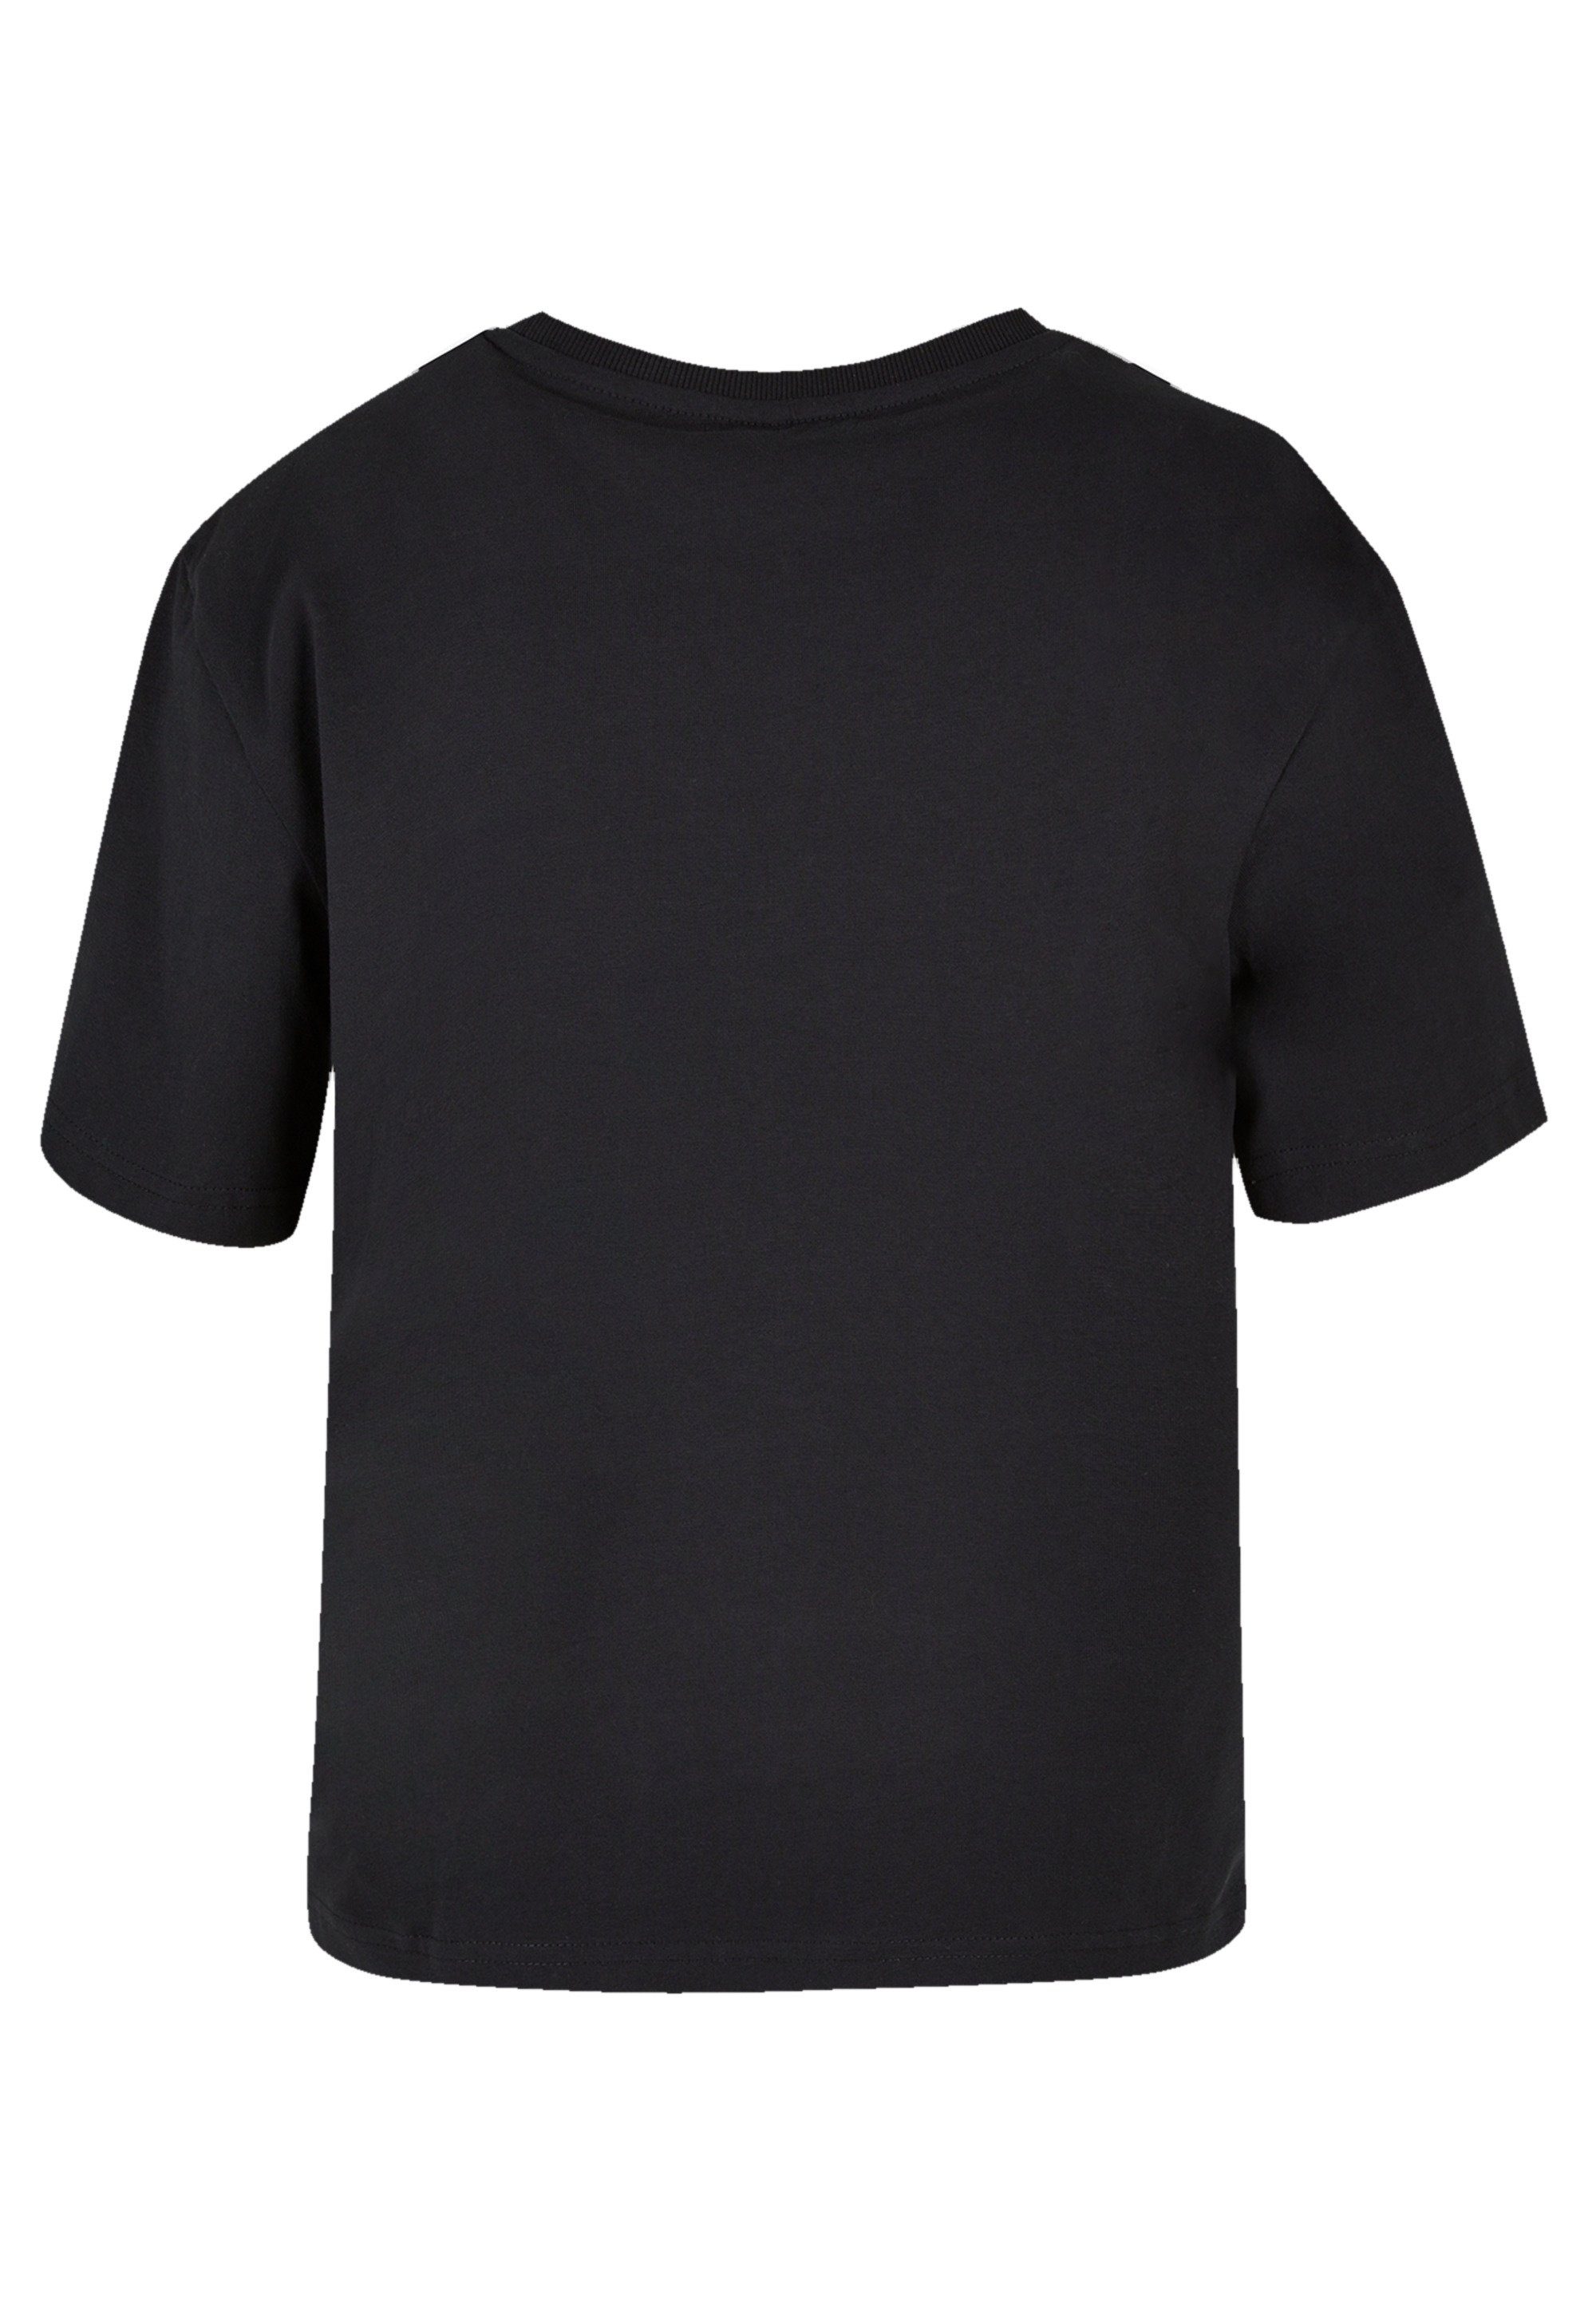 vielseitig & kombinierbar Heartbreaker T-Shirt Komfortabel Qualität, Premium F4NT4STIC und Stitch Lilo Disney